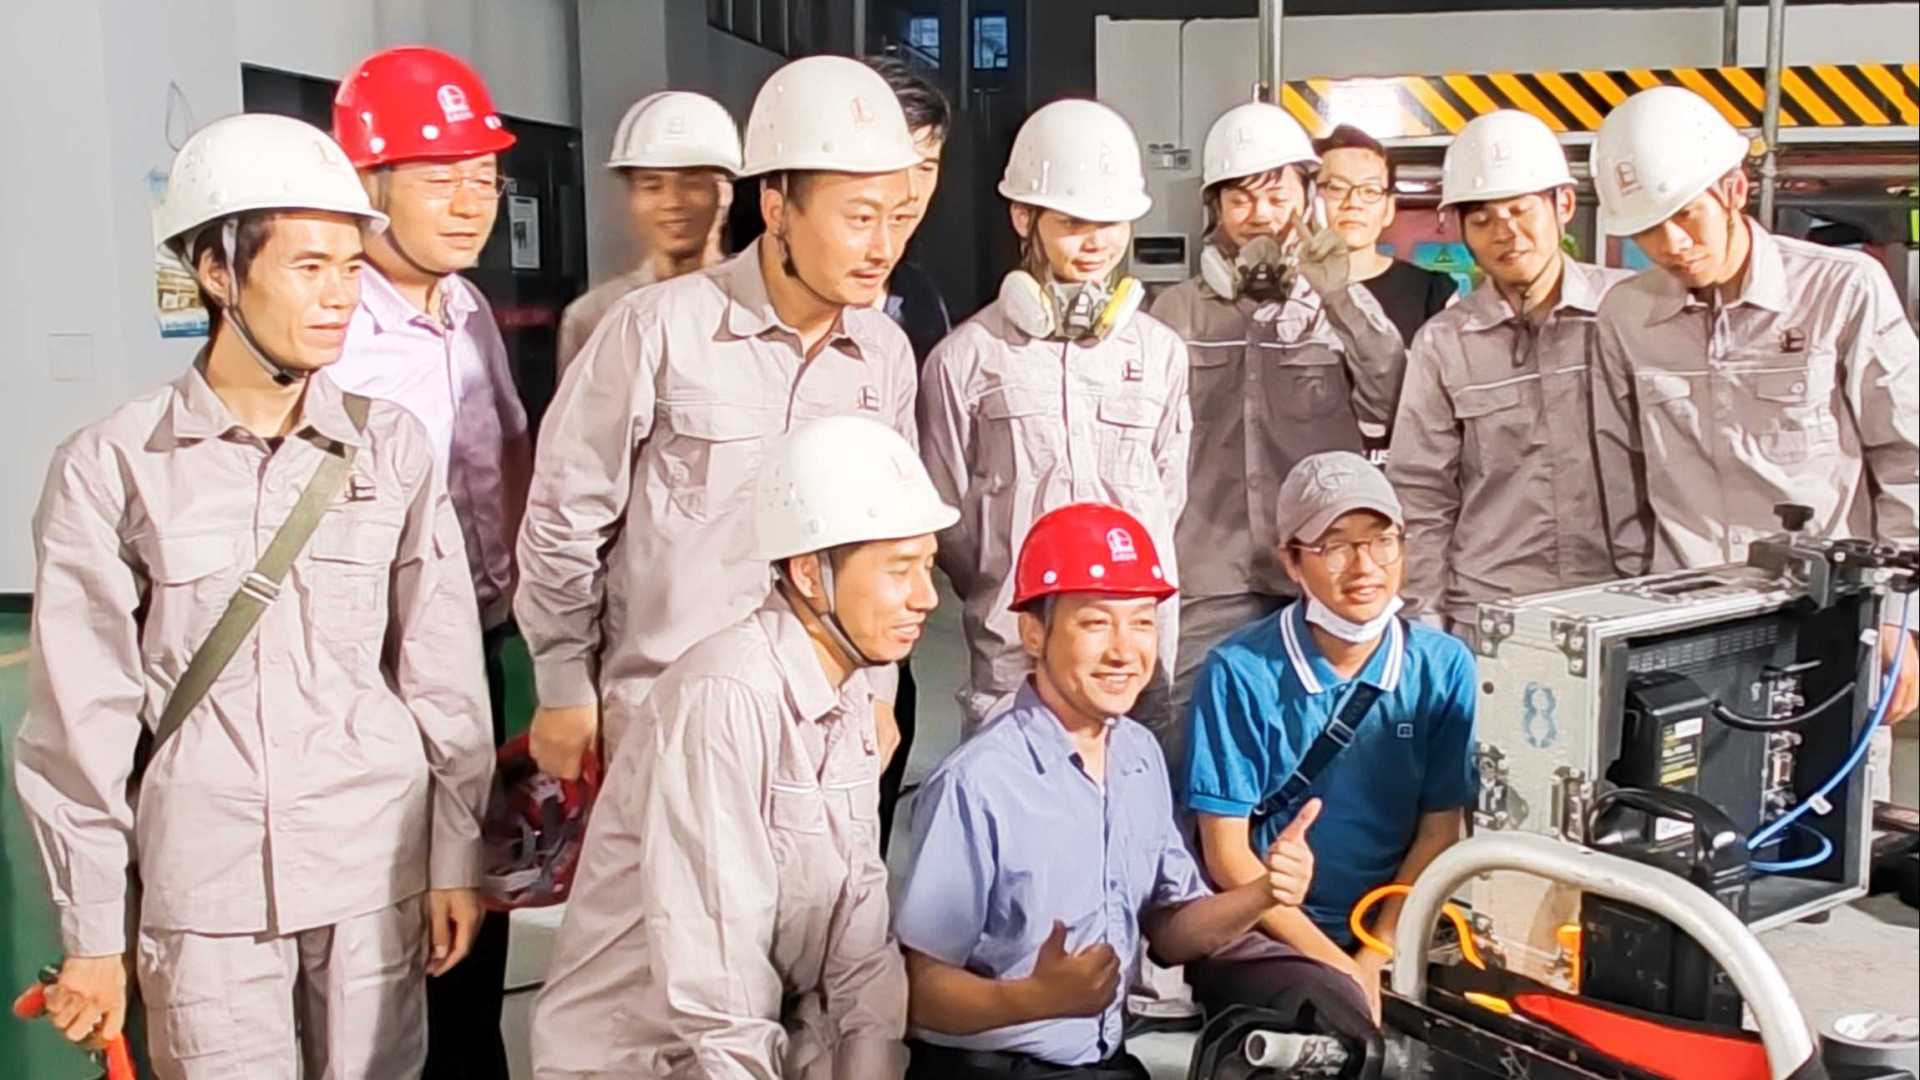 微电影《责任》——广州市应急管理局庆祝新《安全生产法》实施一周年